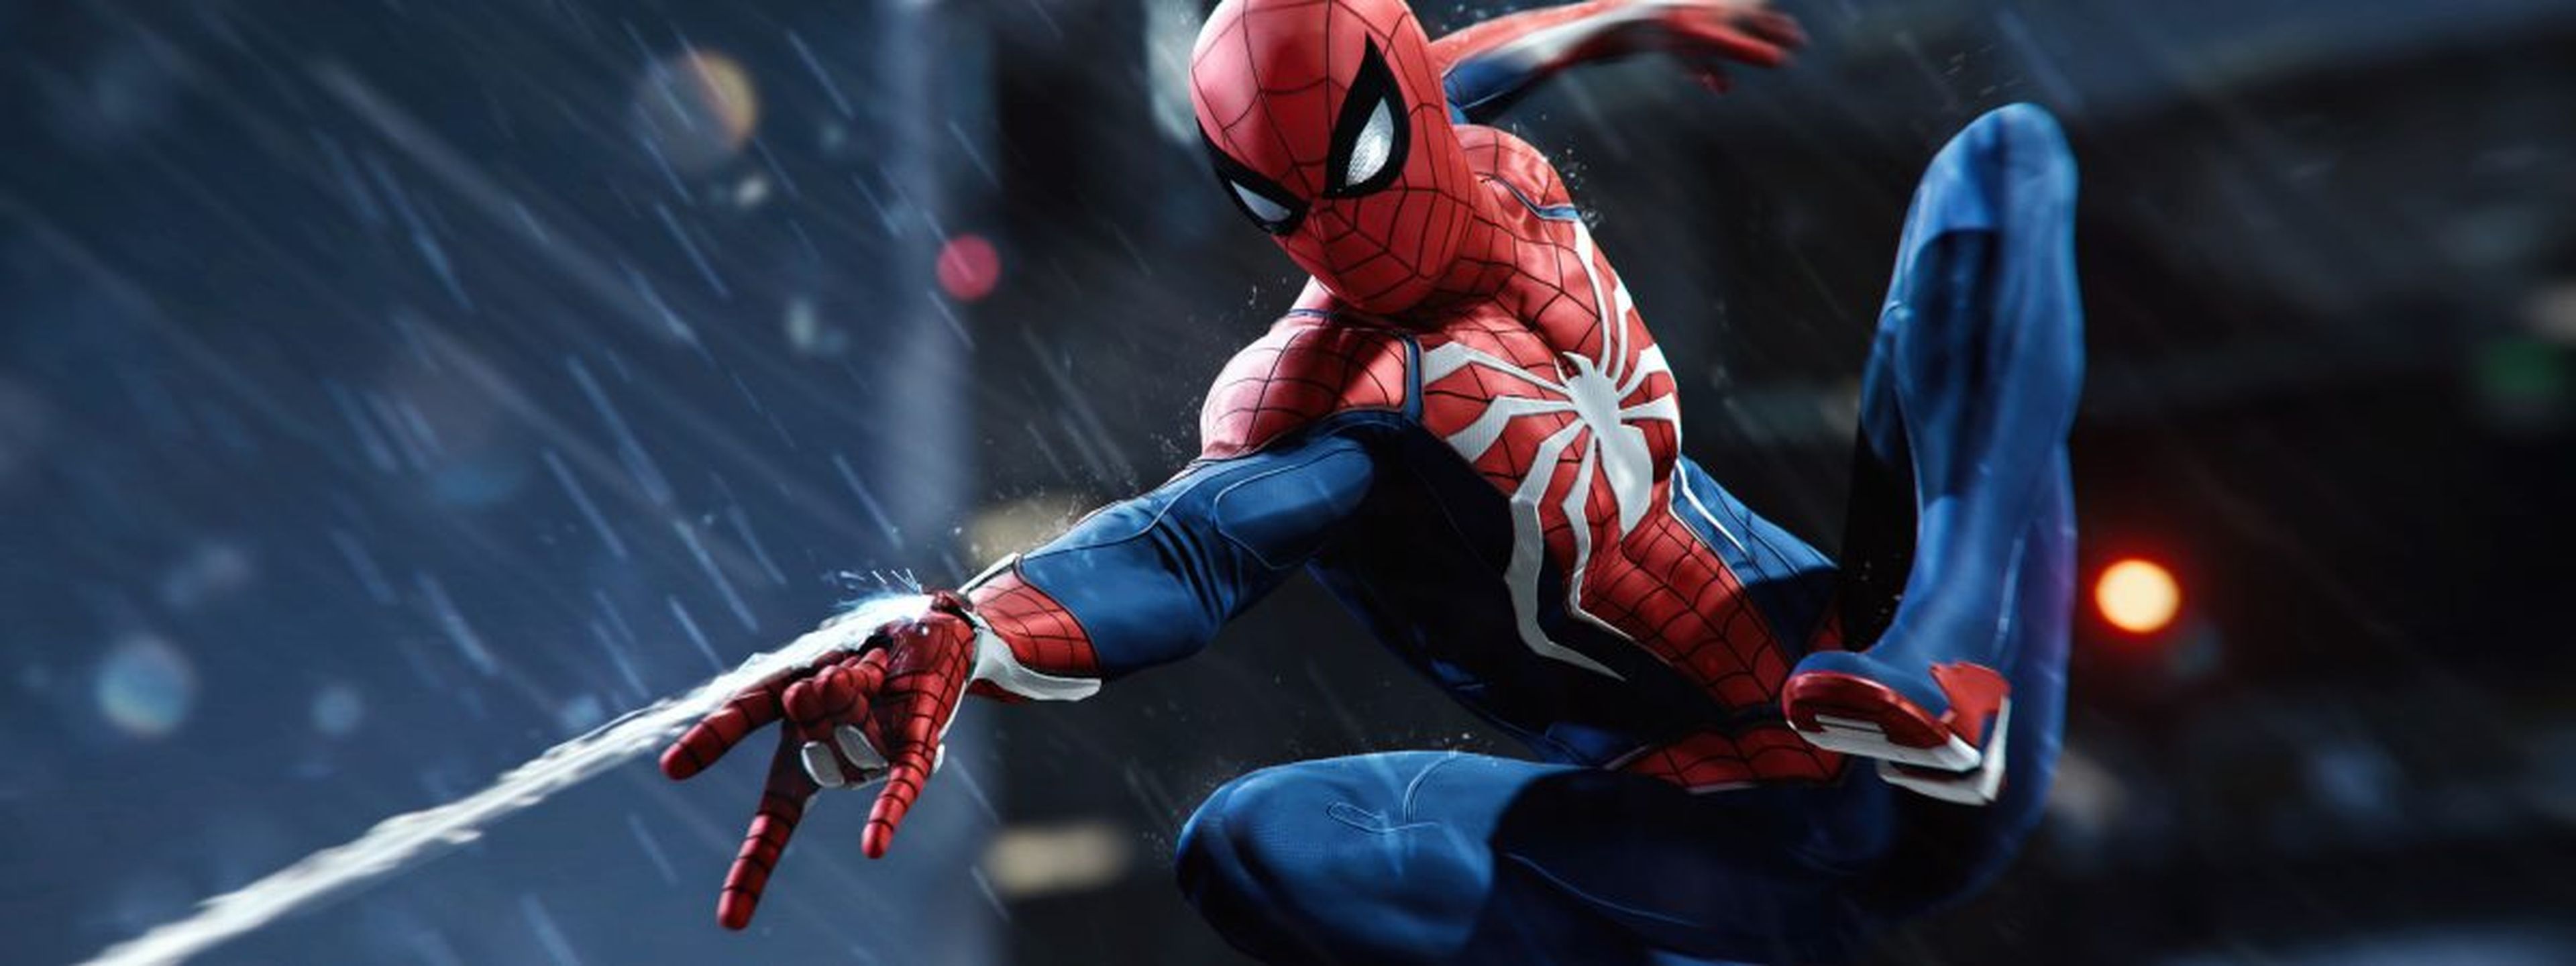 Marvel's Spider-man - Los villanos del videojuego de PS4